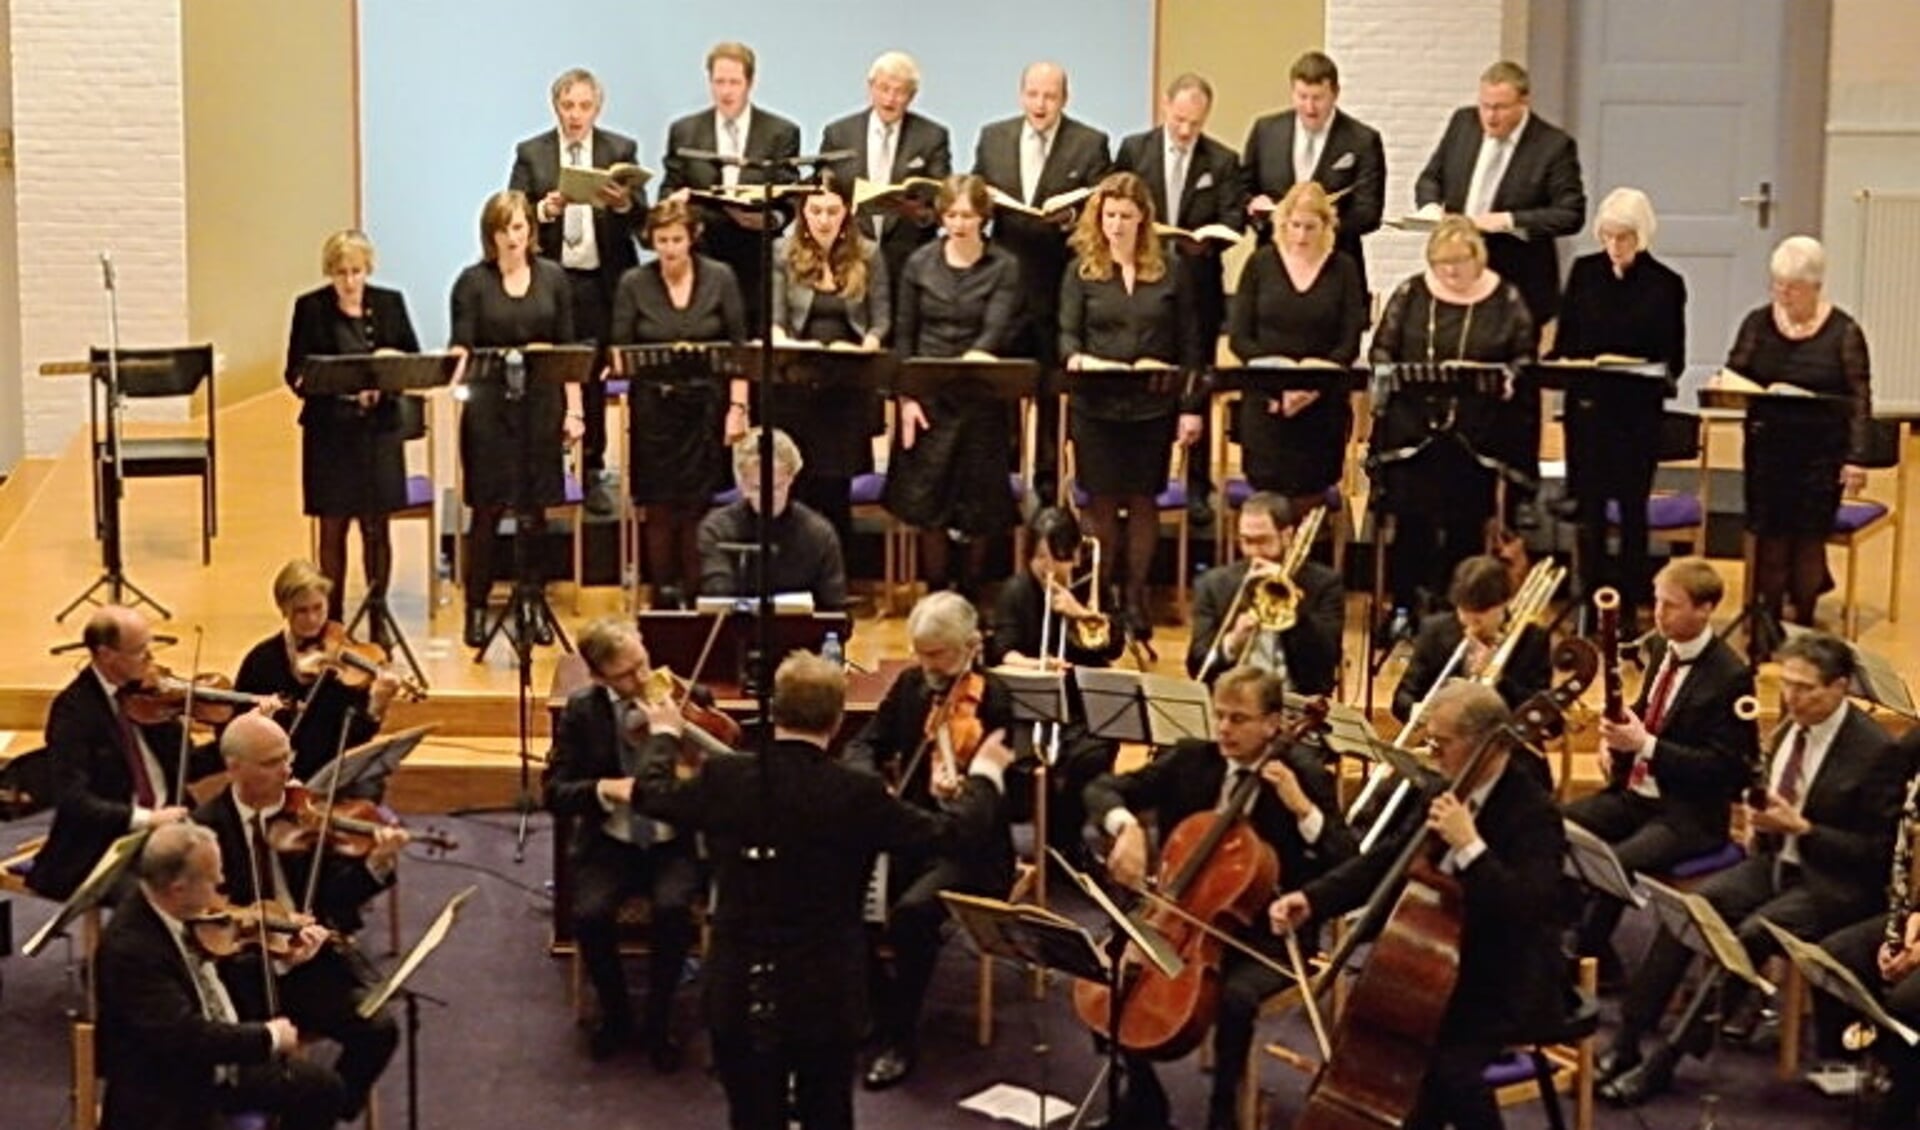 Op 5 april organiseert de VUN een uitvoering van de Johannes Passion van J.S. Bach.